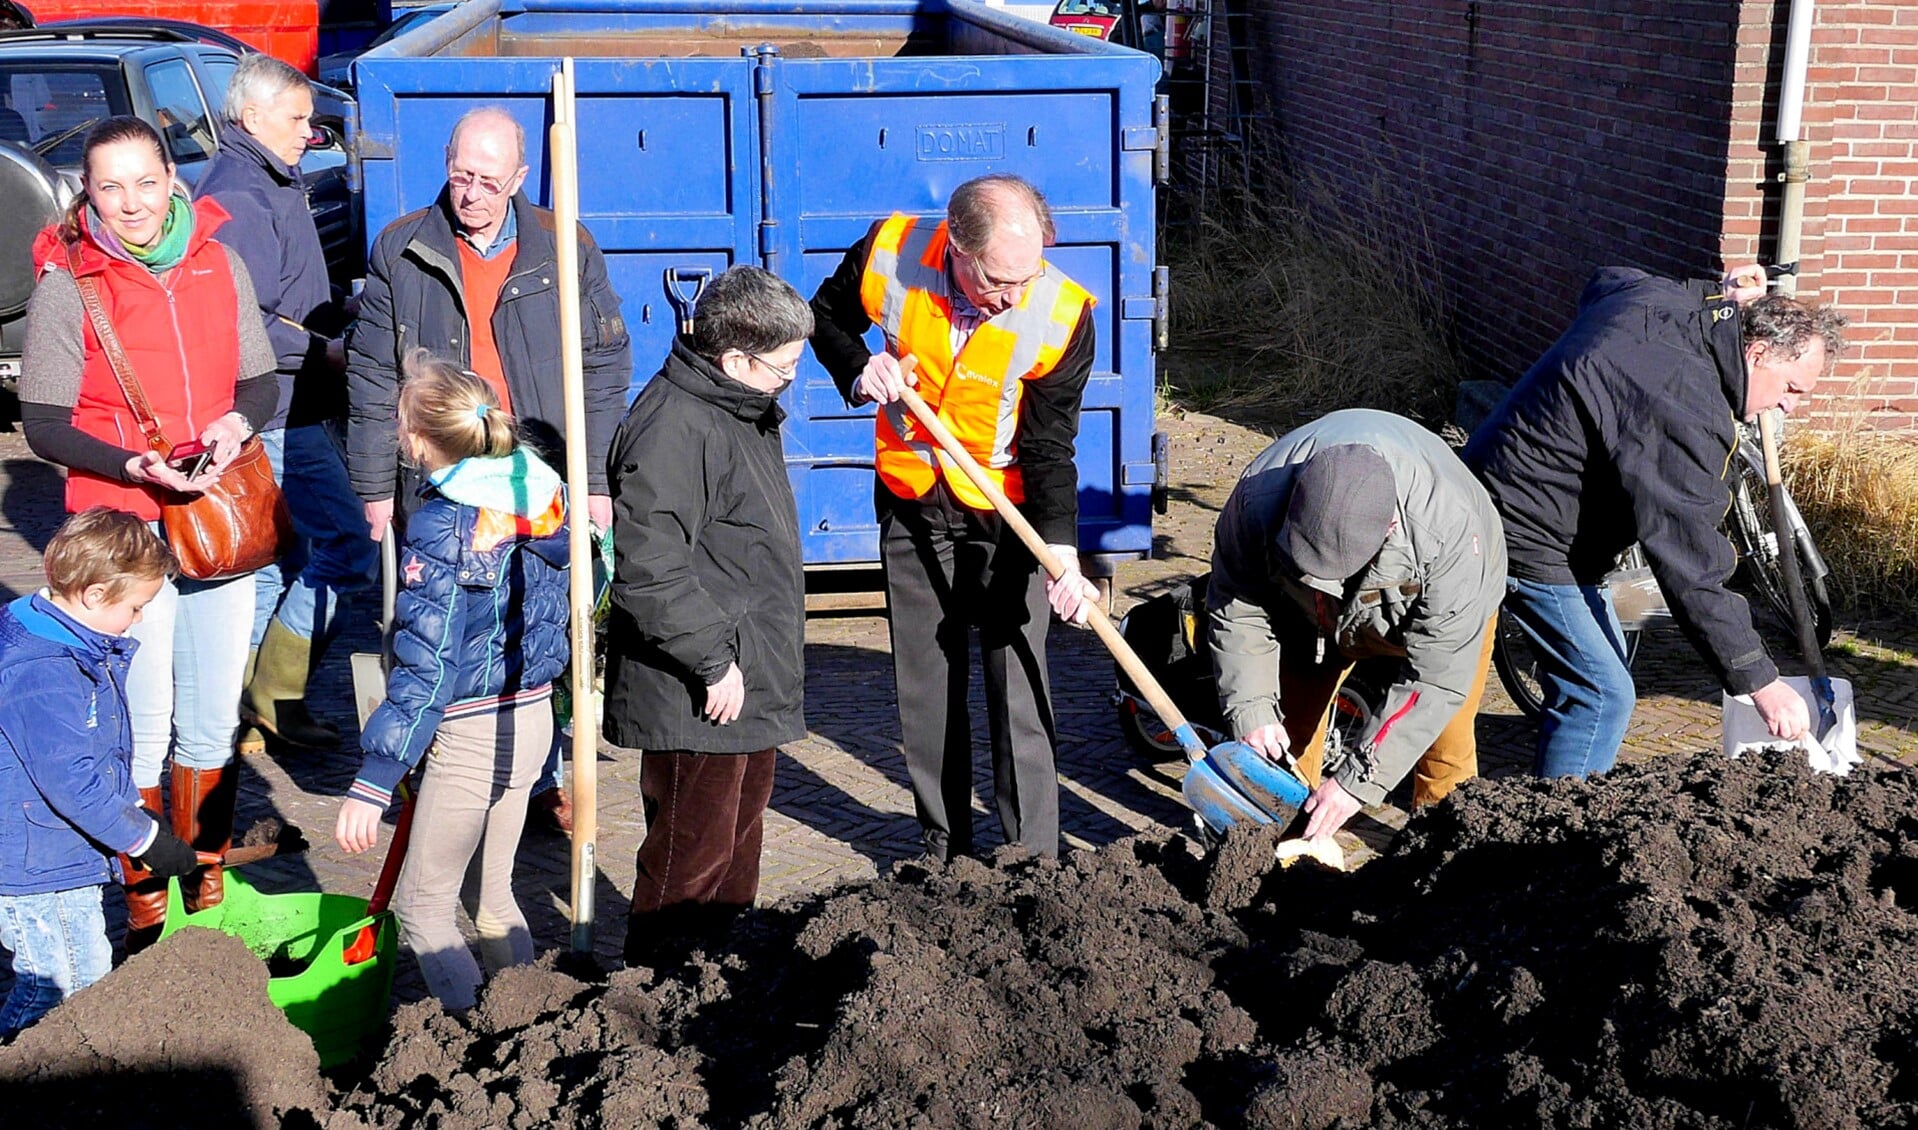 Wethouder Floor Kist hielp ook ijverig mee bij het vullen van zakken met compost (foto Ot Douwes).